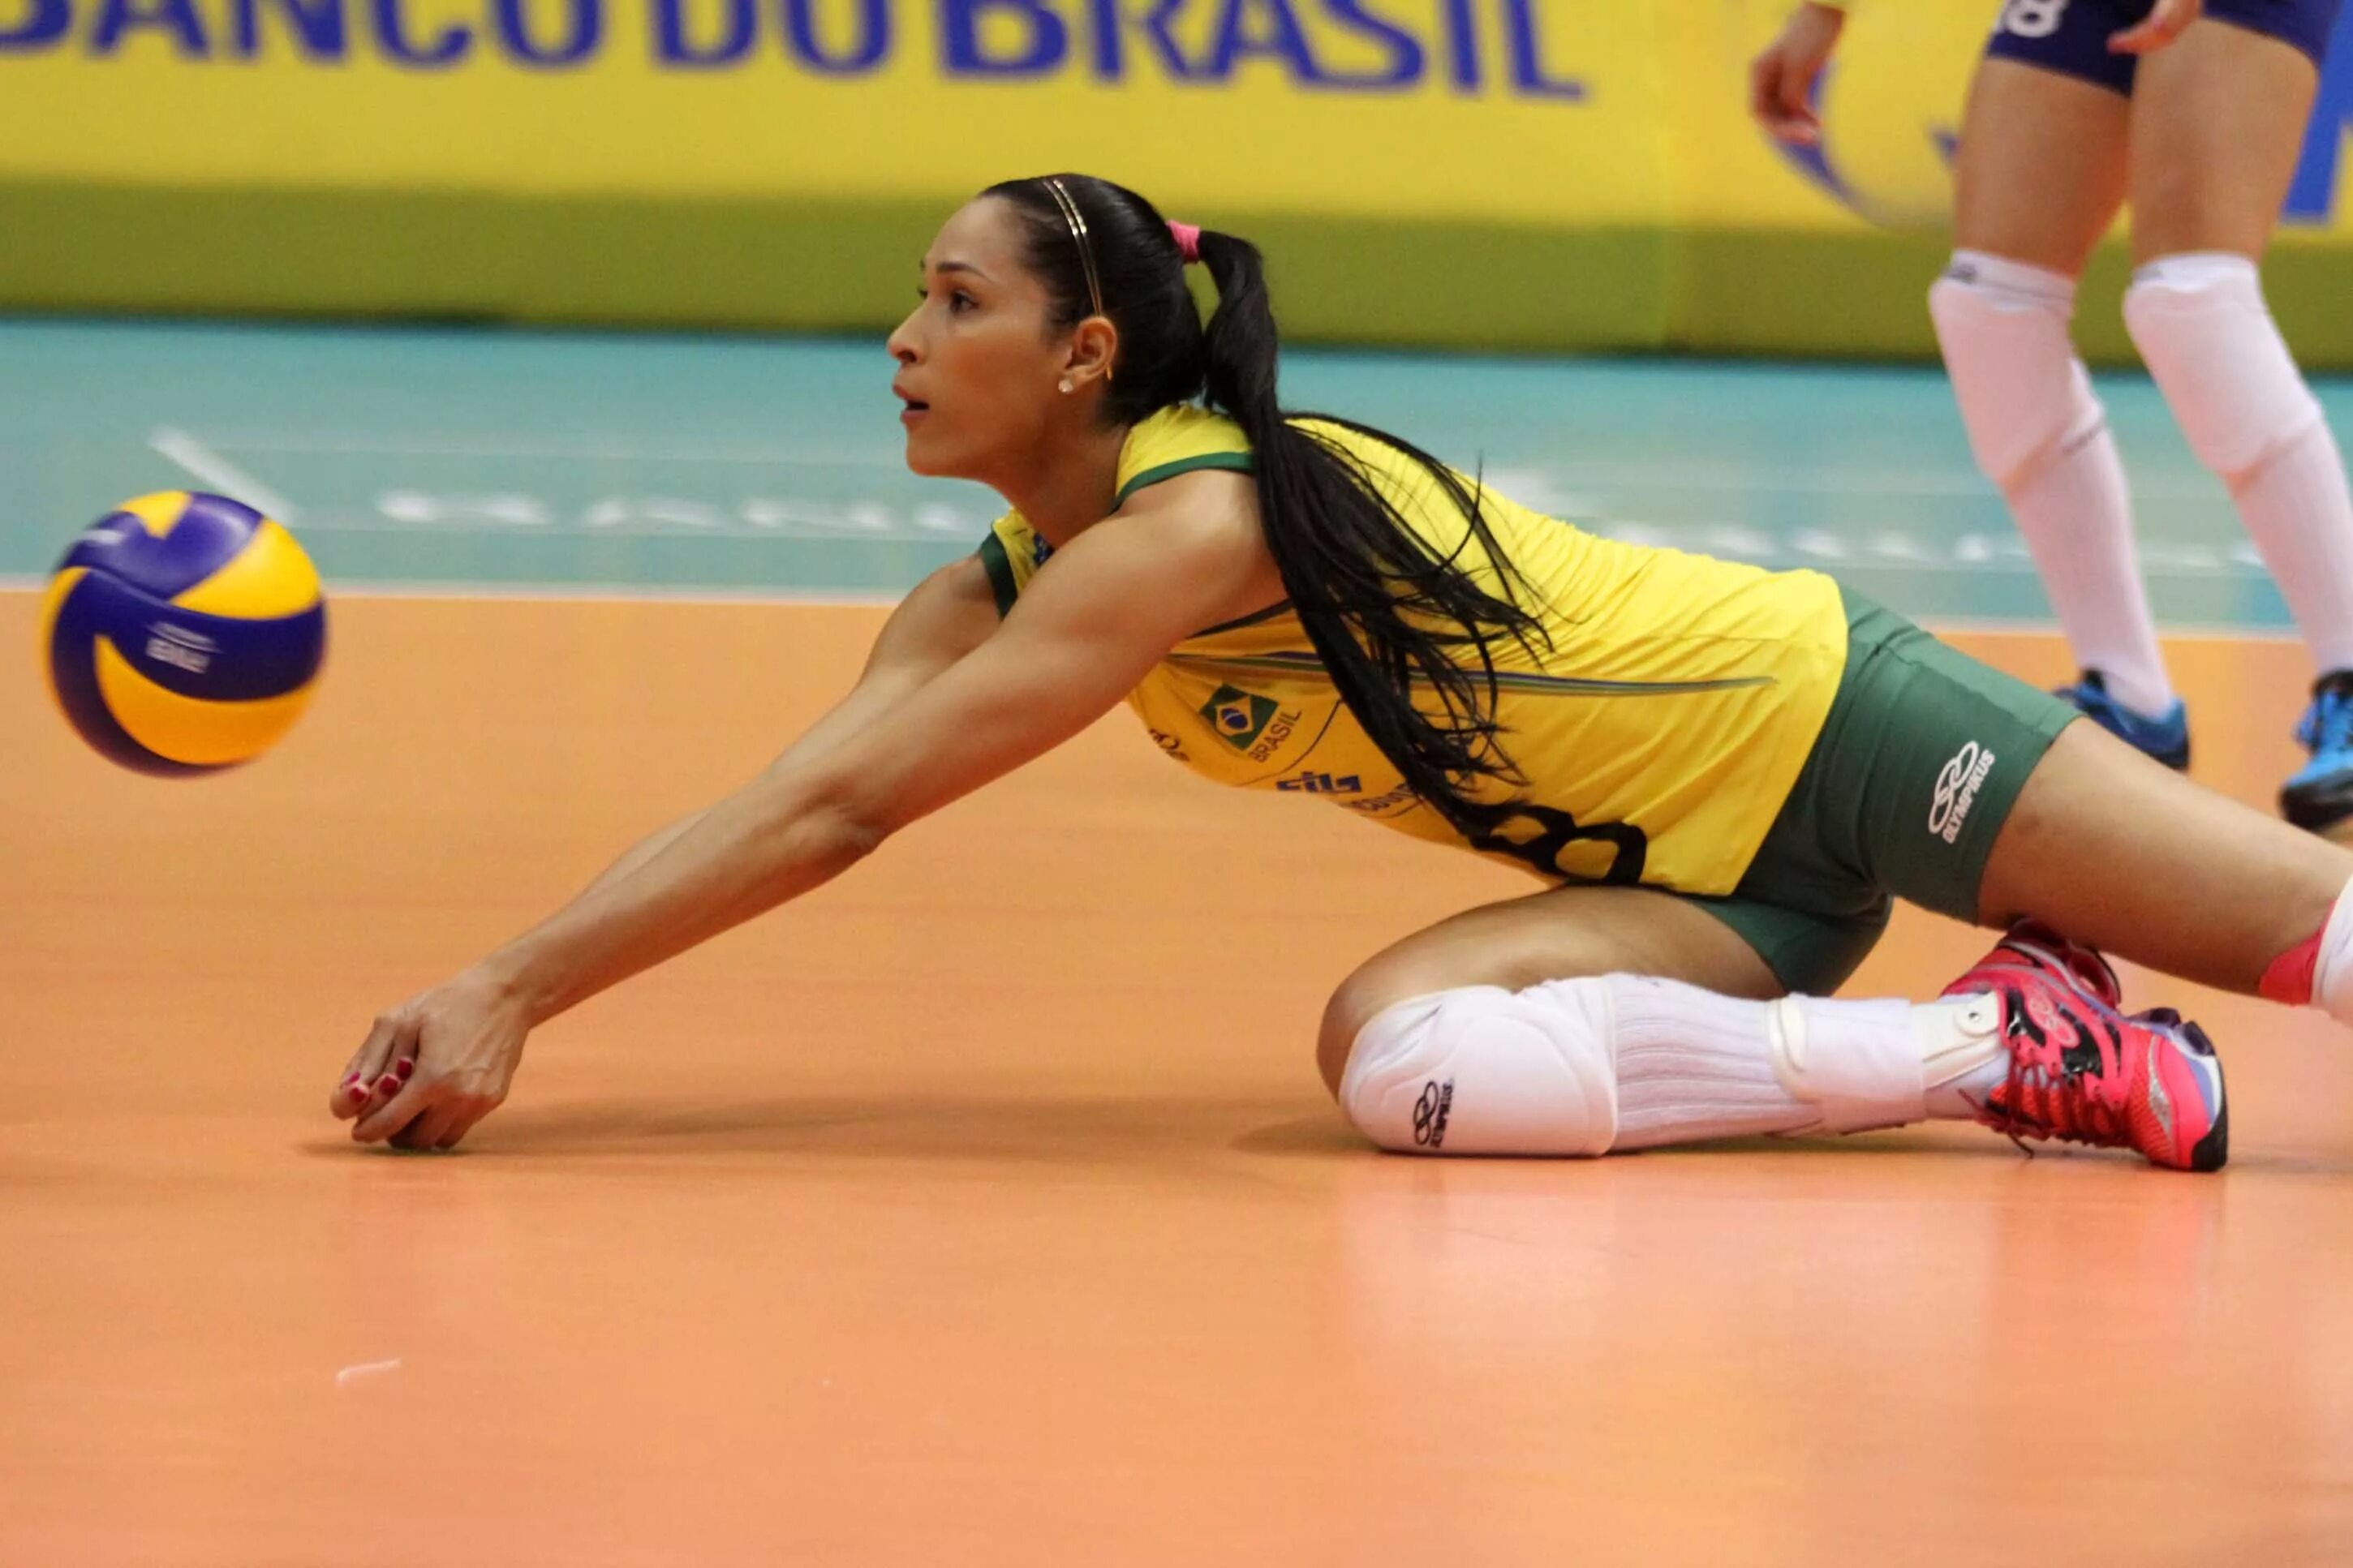 Woman volleyball. Андреа Дрюс волейболистка. Лорен волейболистка Бразилии. Миранда Вебер волейбол.